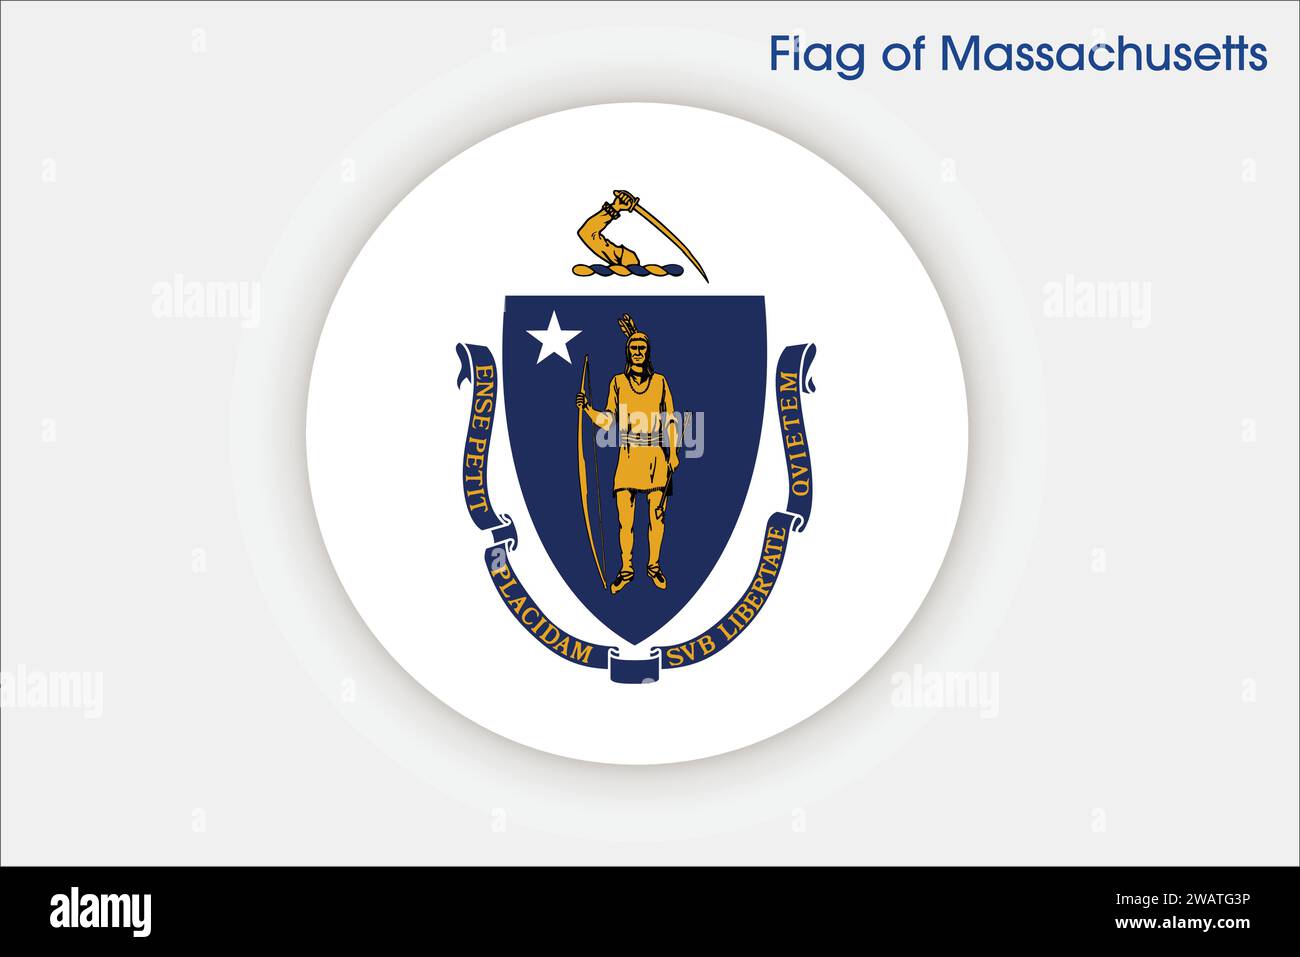 Drapeau détaillé élevé du Massachusetts. Drapeau de l'État du Massachusetts, drapeau national du Massachusetts. Drapeau de l'état Massachusetts. ÉTATS-UNIS. Amérique. Illustration de Vecteur